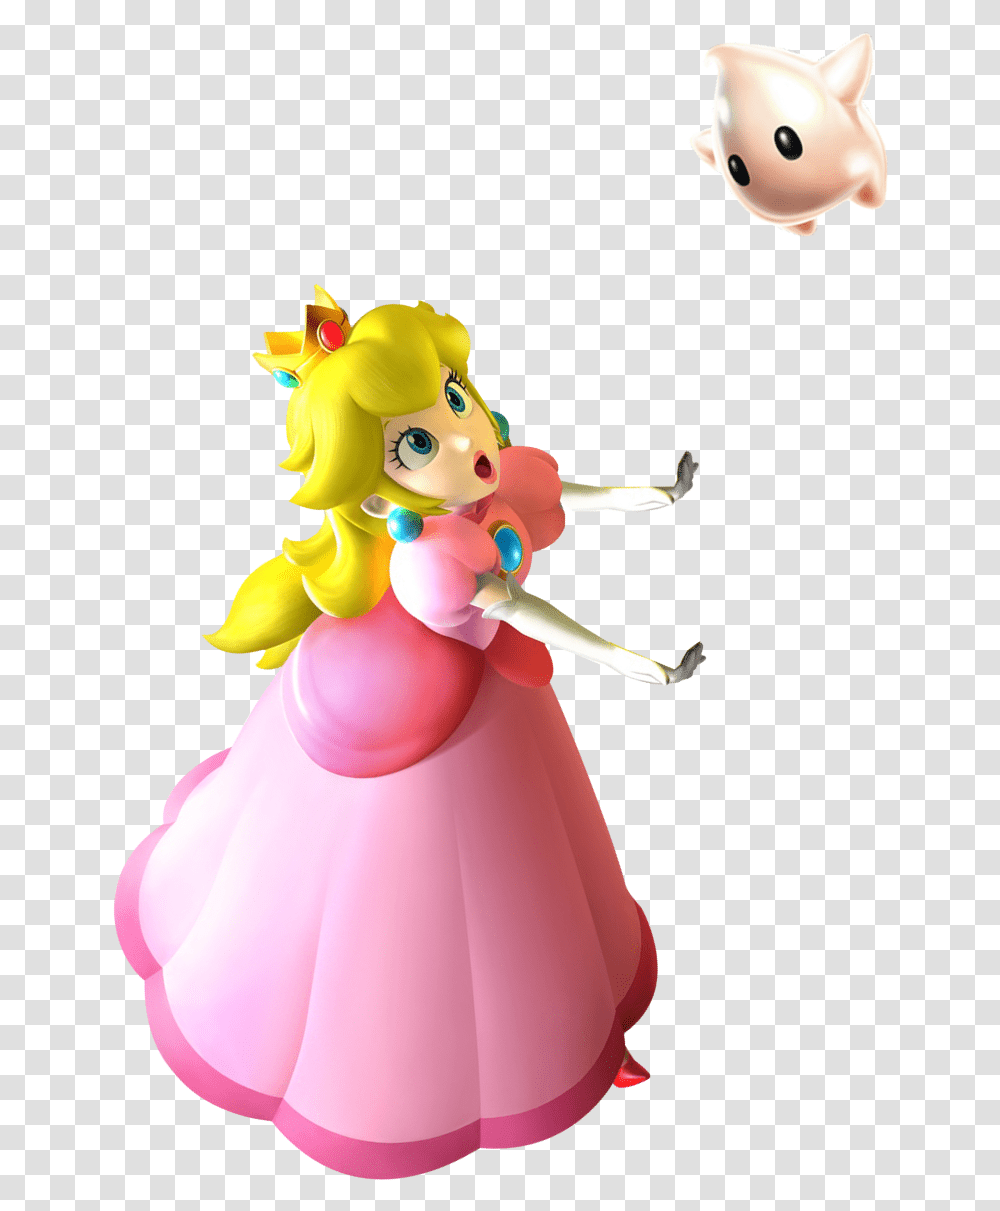 Princess Peach Clipart Super Mario Galaxy Princess Peach In Super Mario Galaxy, Toy, Doll Transparent Png